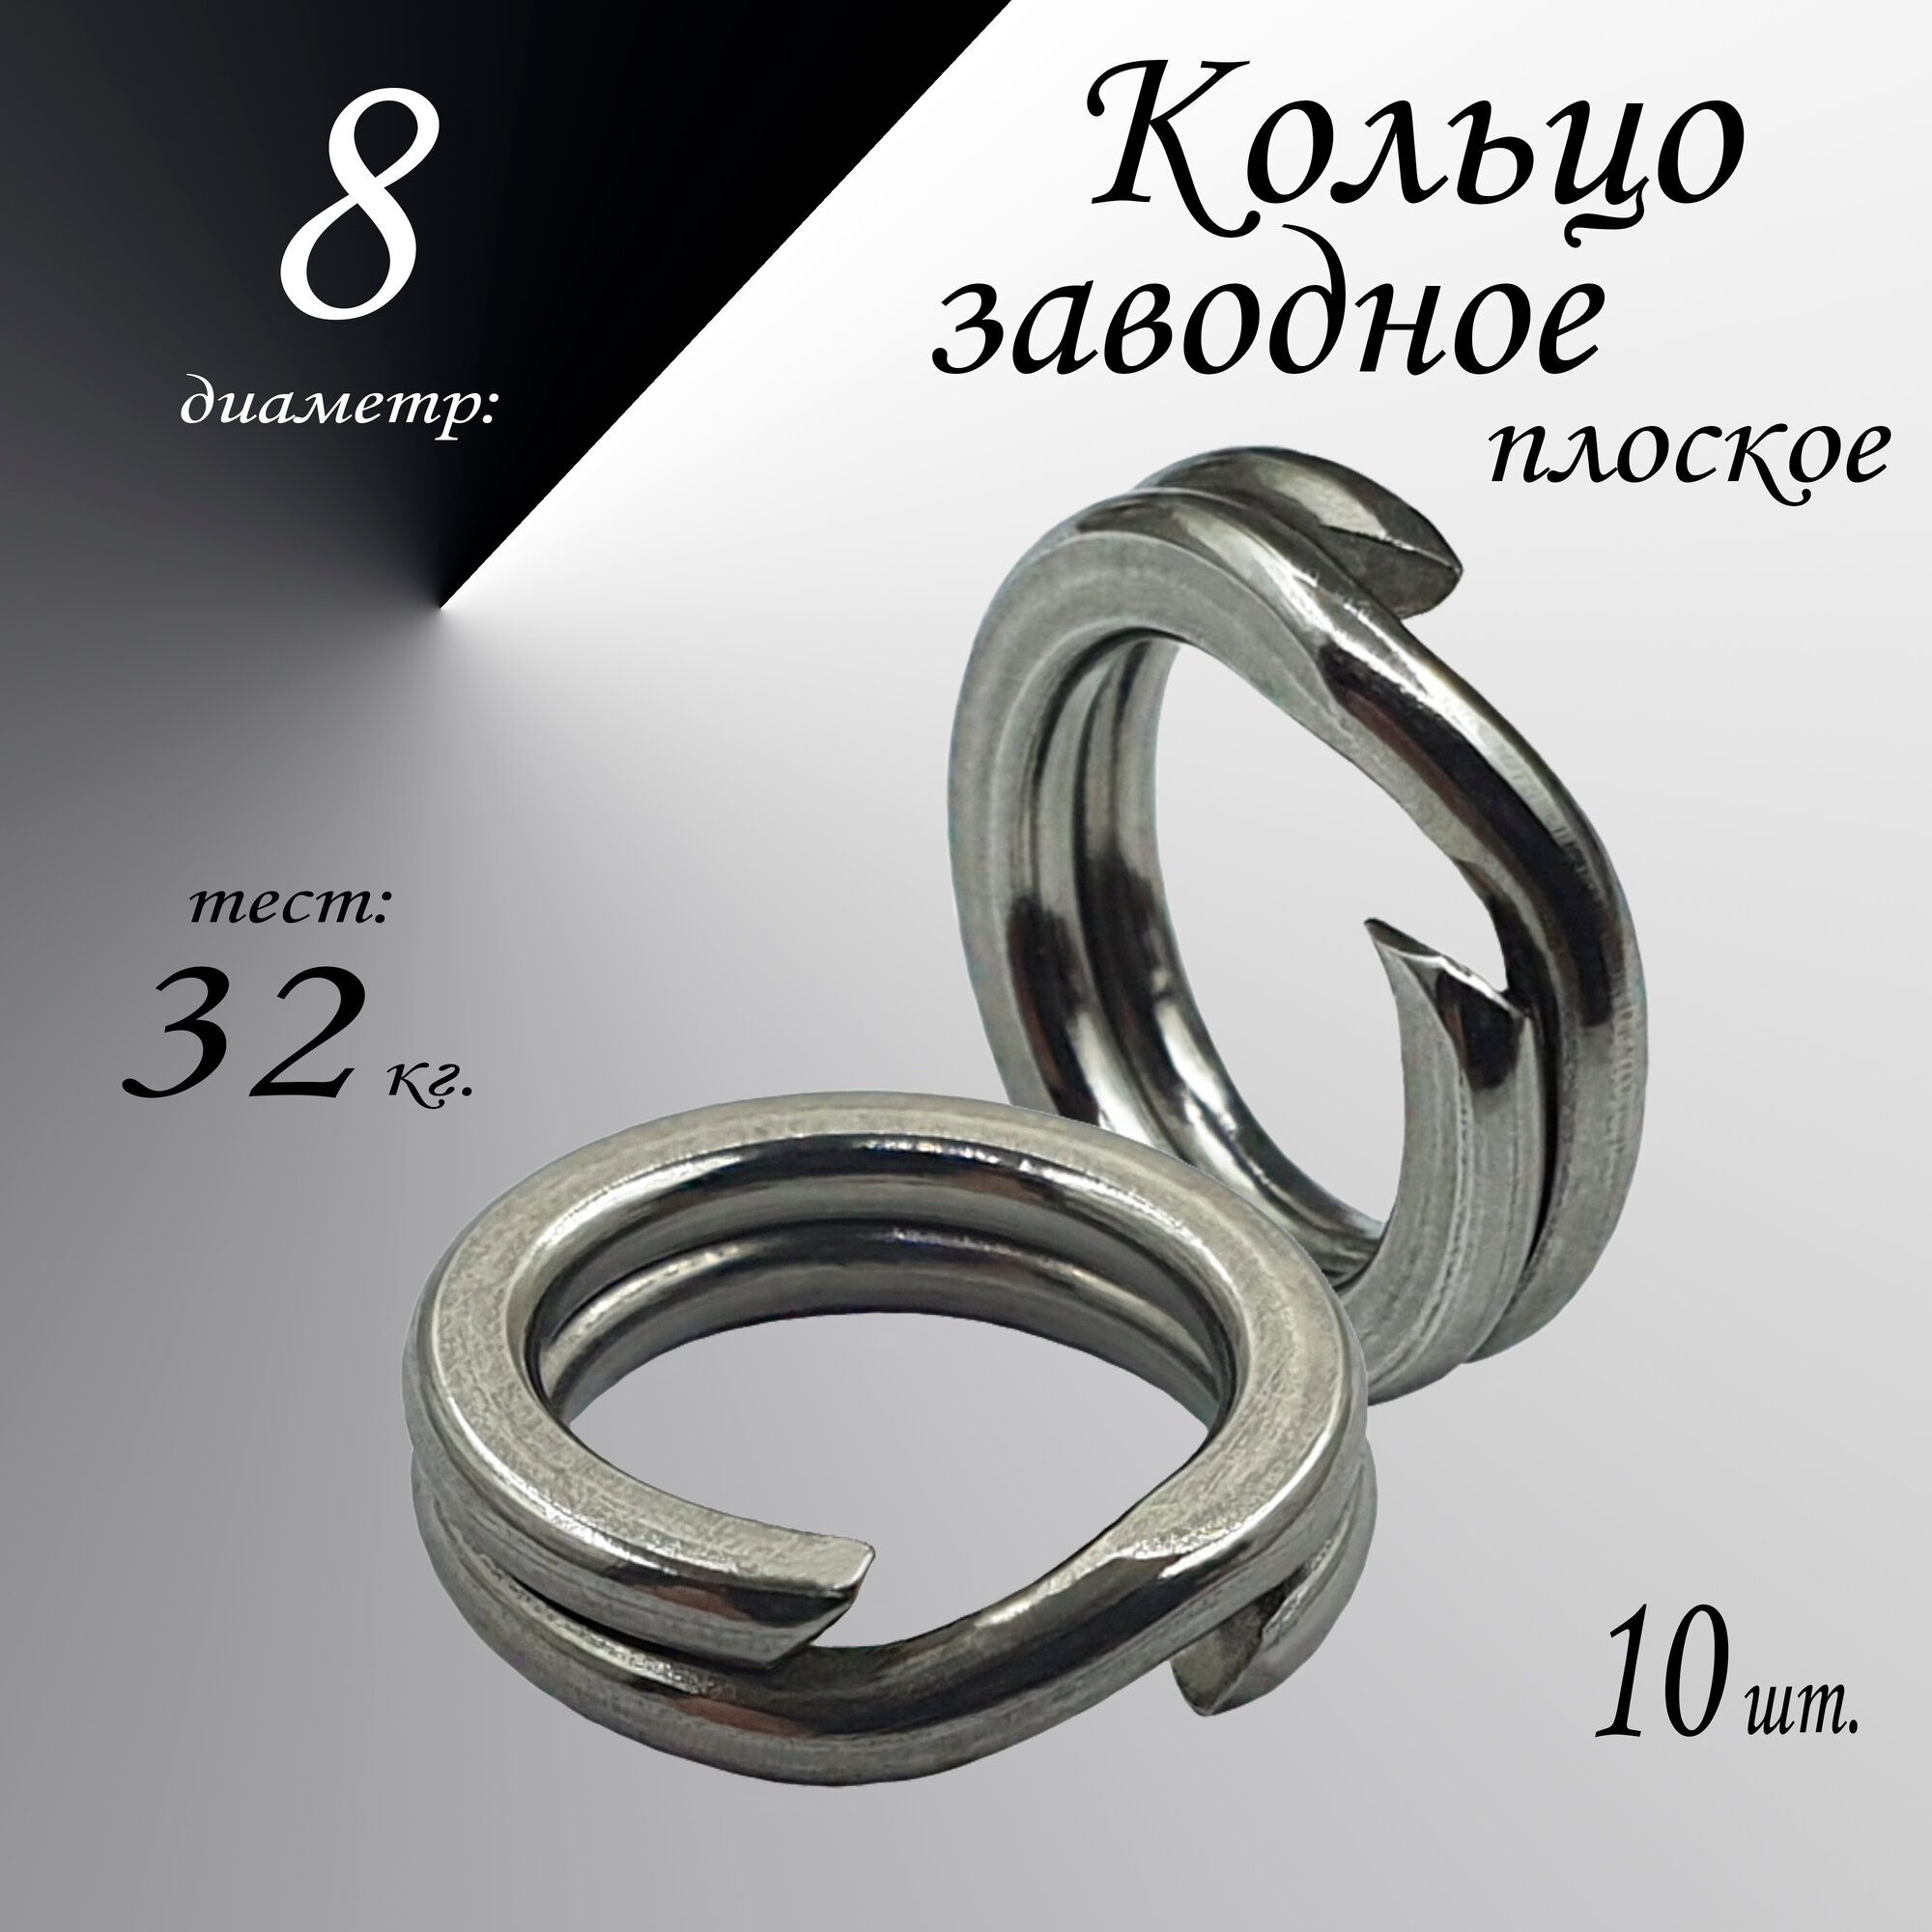 Заводное кольцо, плоское, диам-8,0 мм, тест 32 кг, (в уп. 10 шт.)